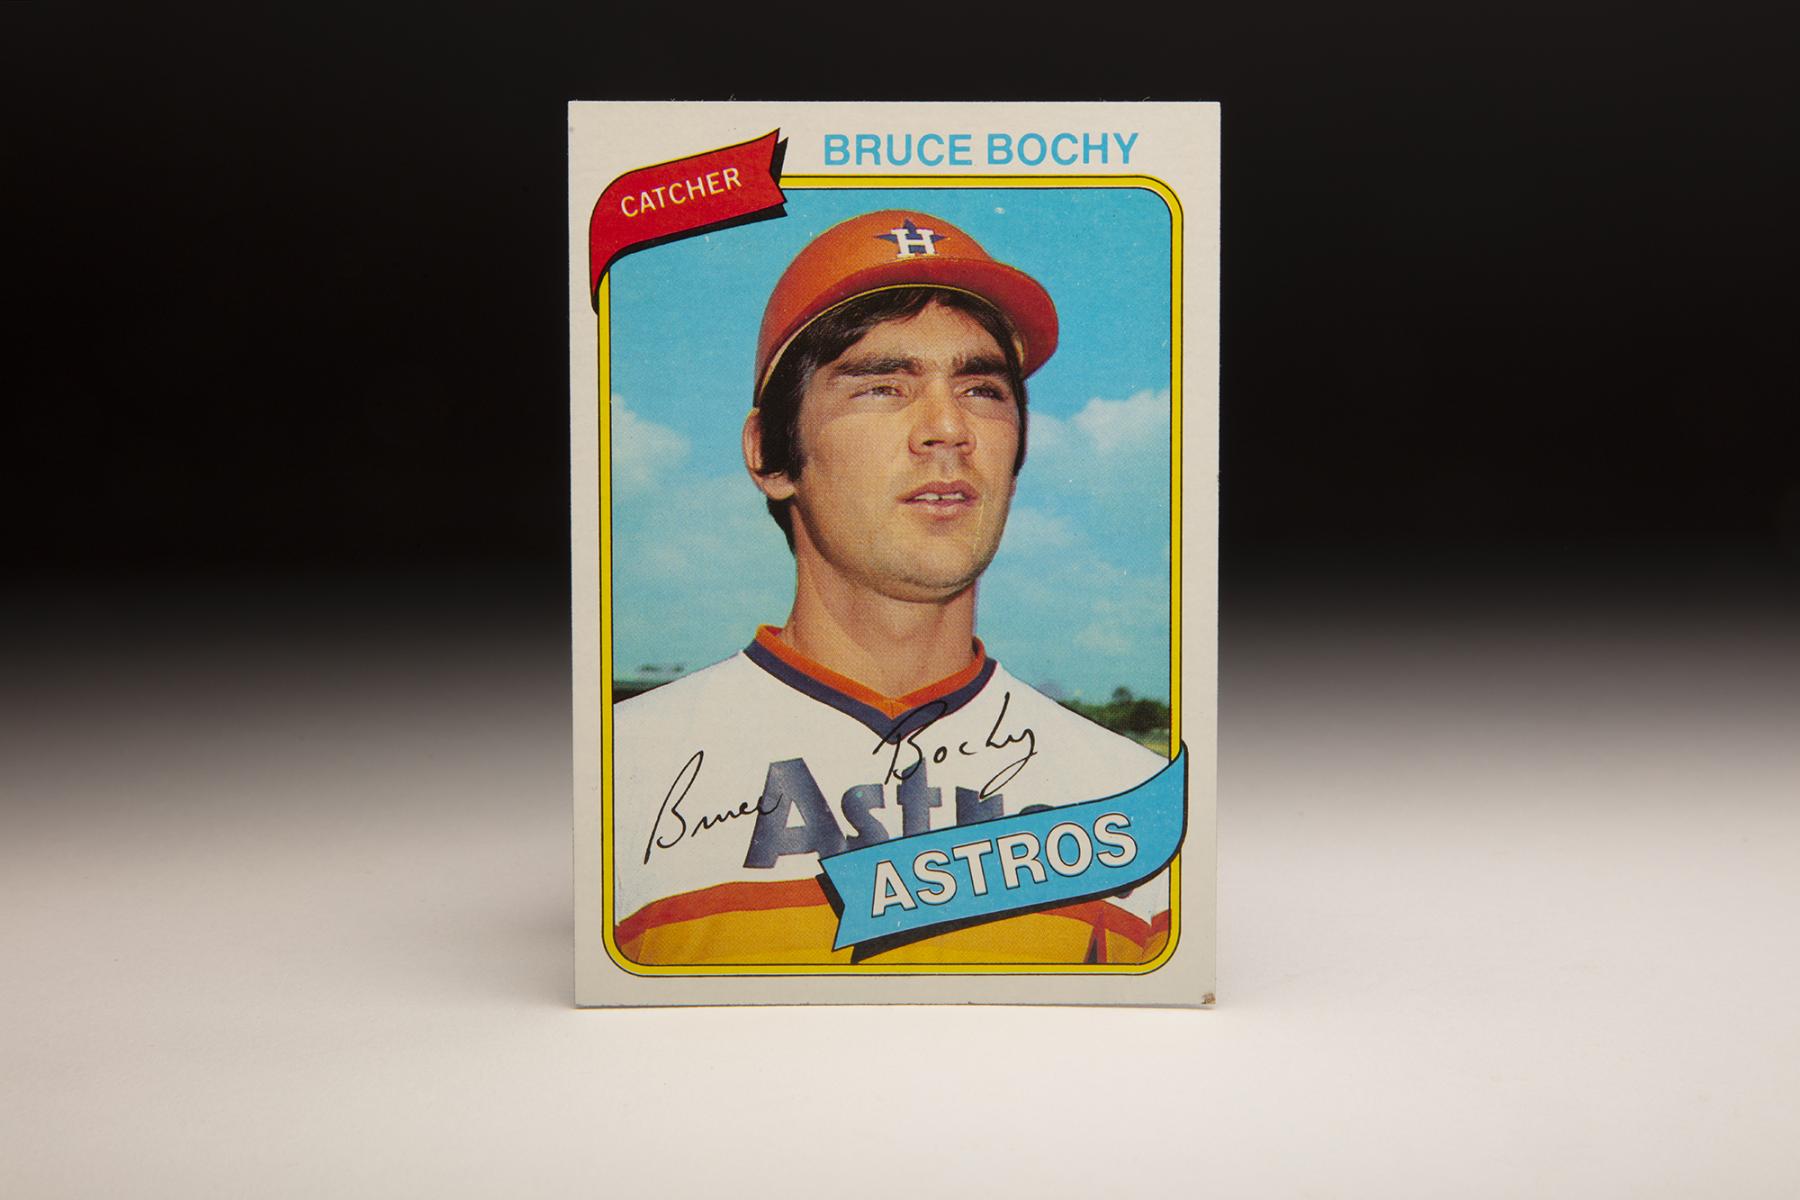 Bruce Bochy - Awards - The Baseball Cube